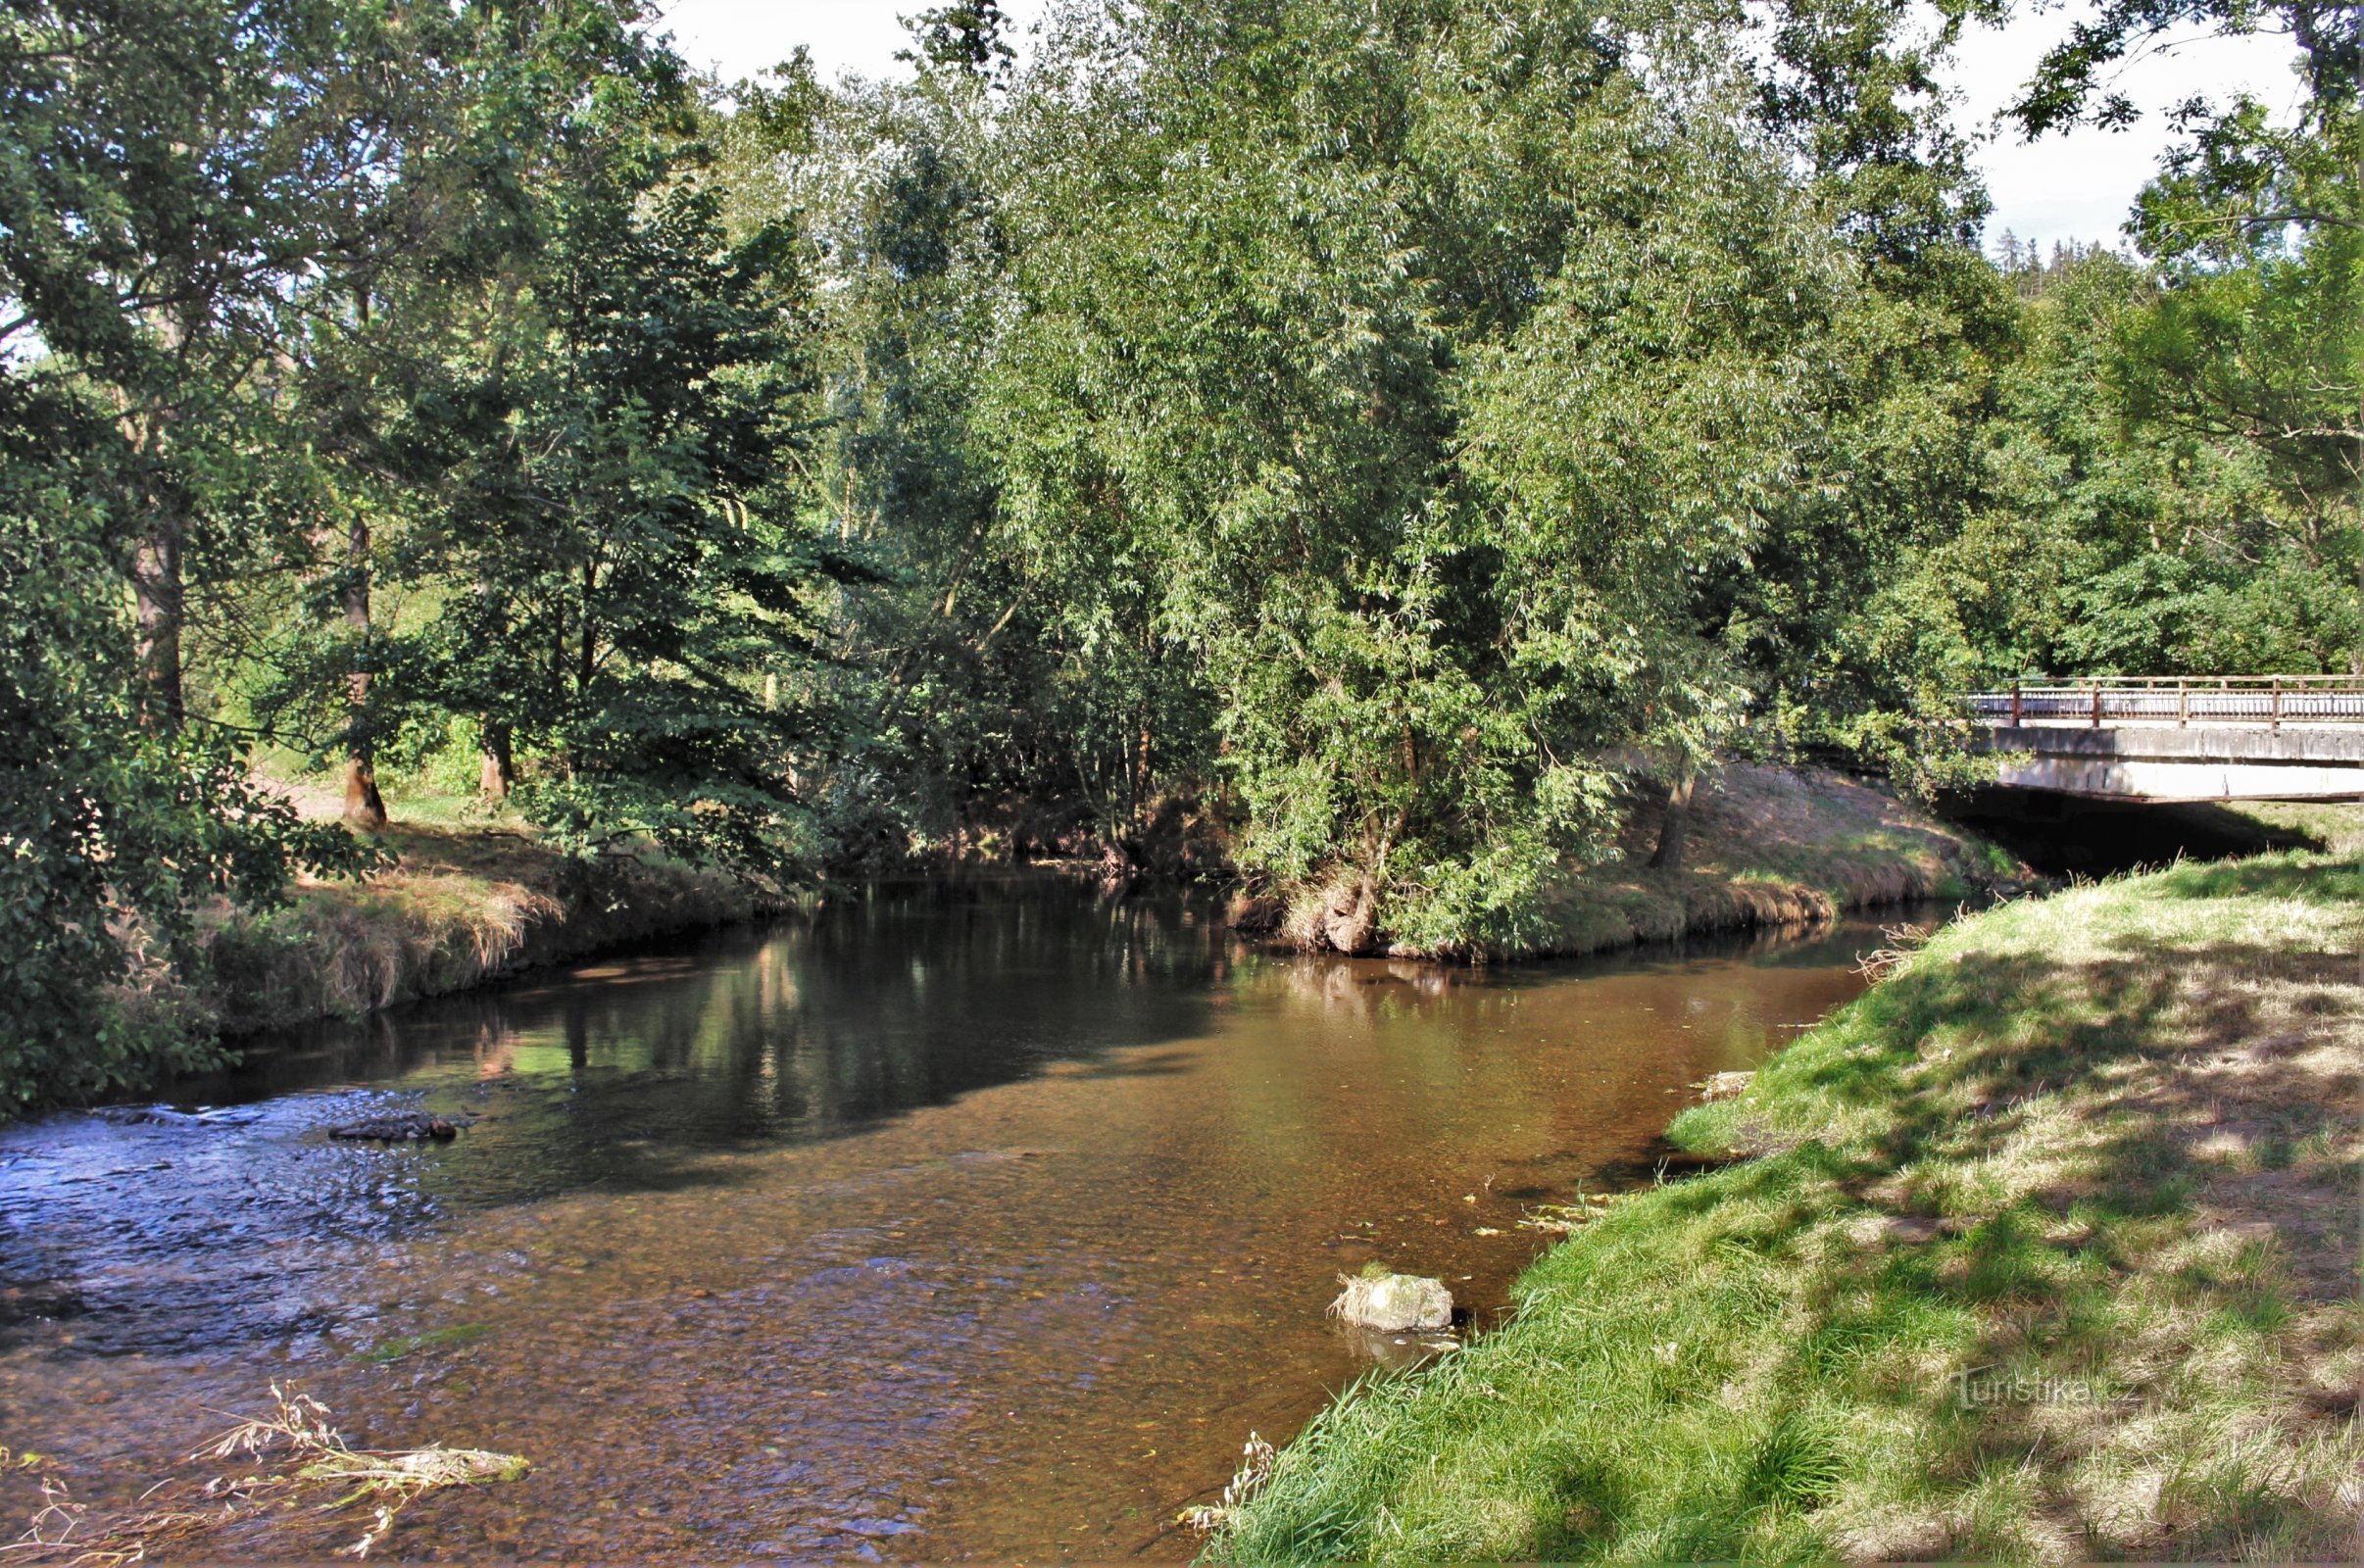 Rijeka Svitava teče s lijeve strane, rijeka Bělá s mosta s desne strane